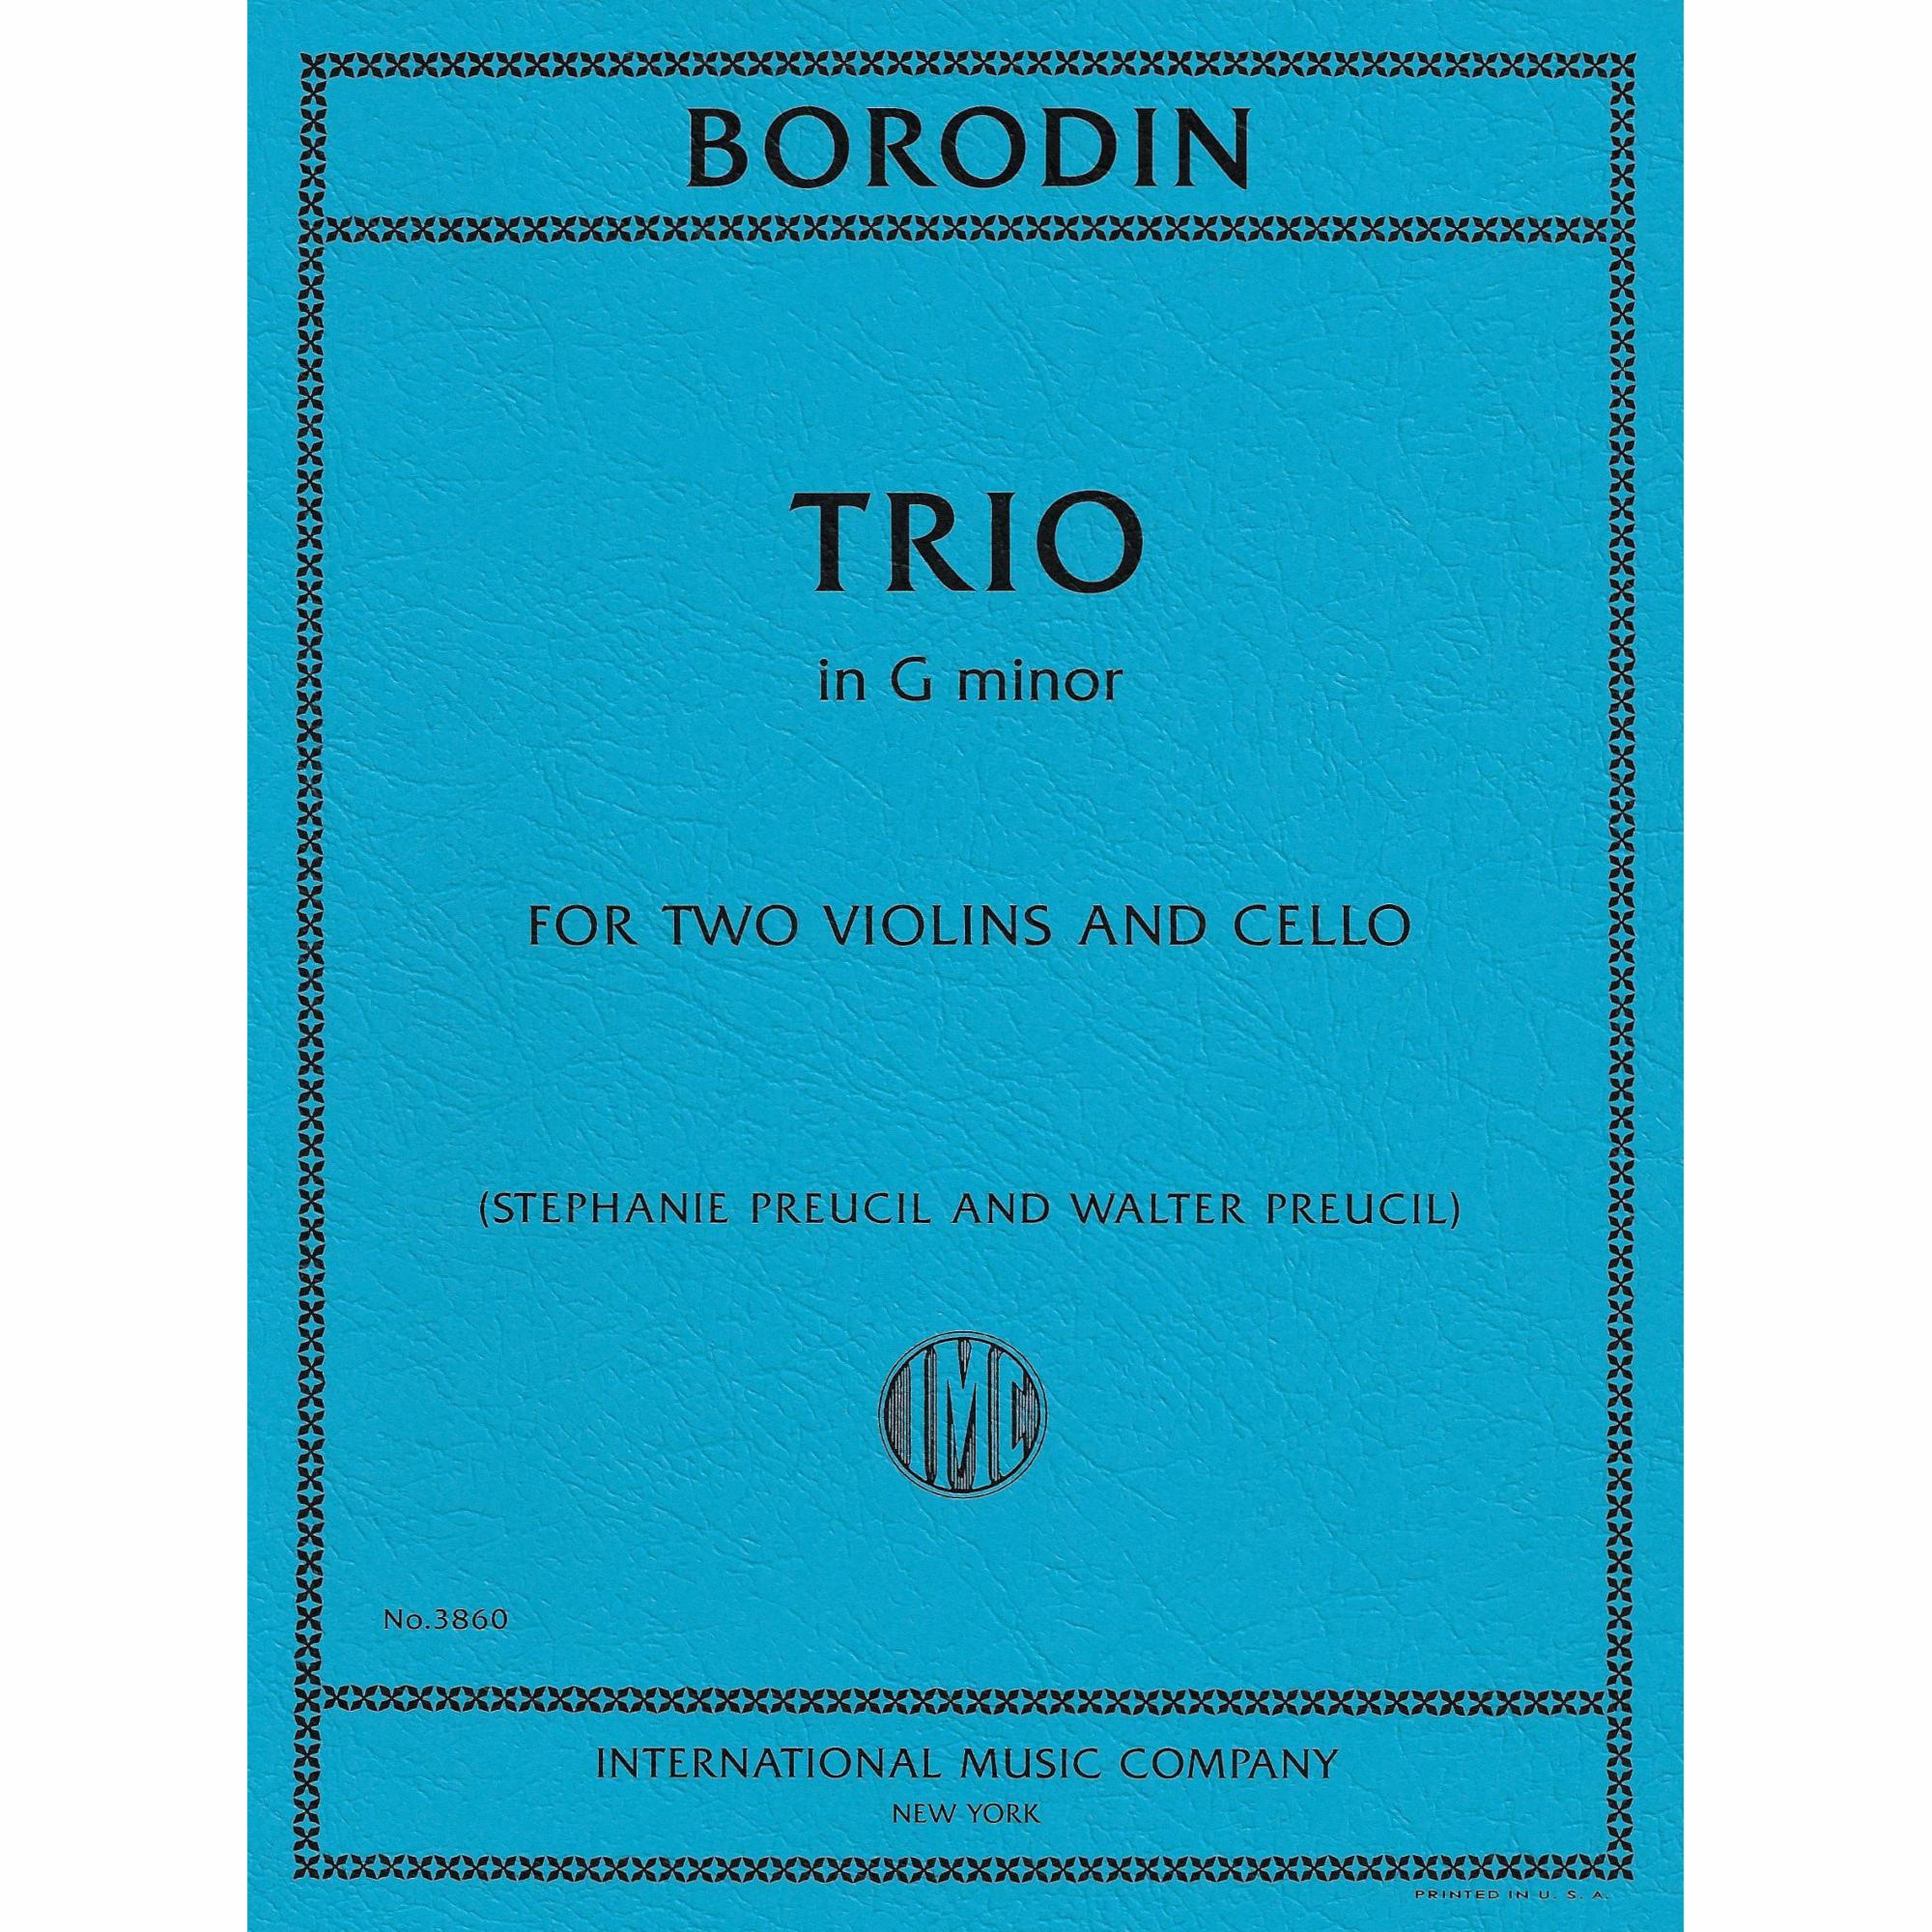 Borodin -- Trio in G Minor for Two Violins and Cello